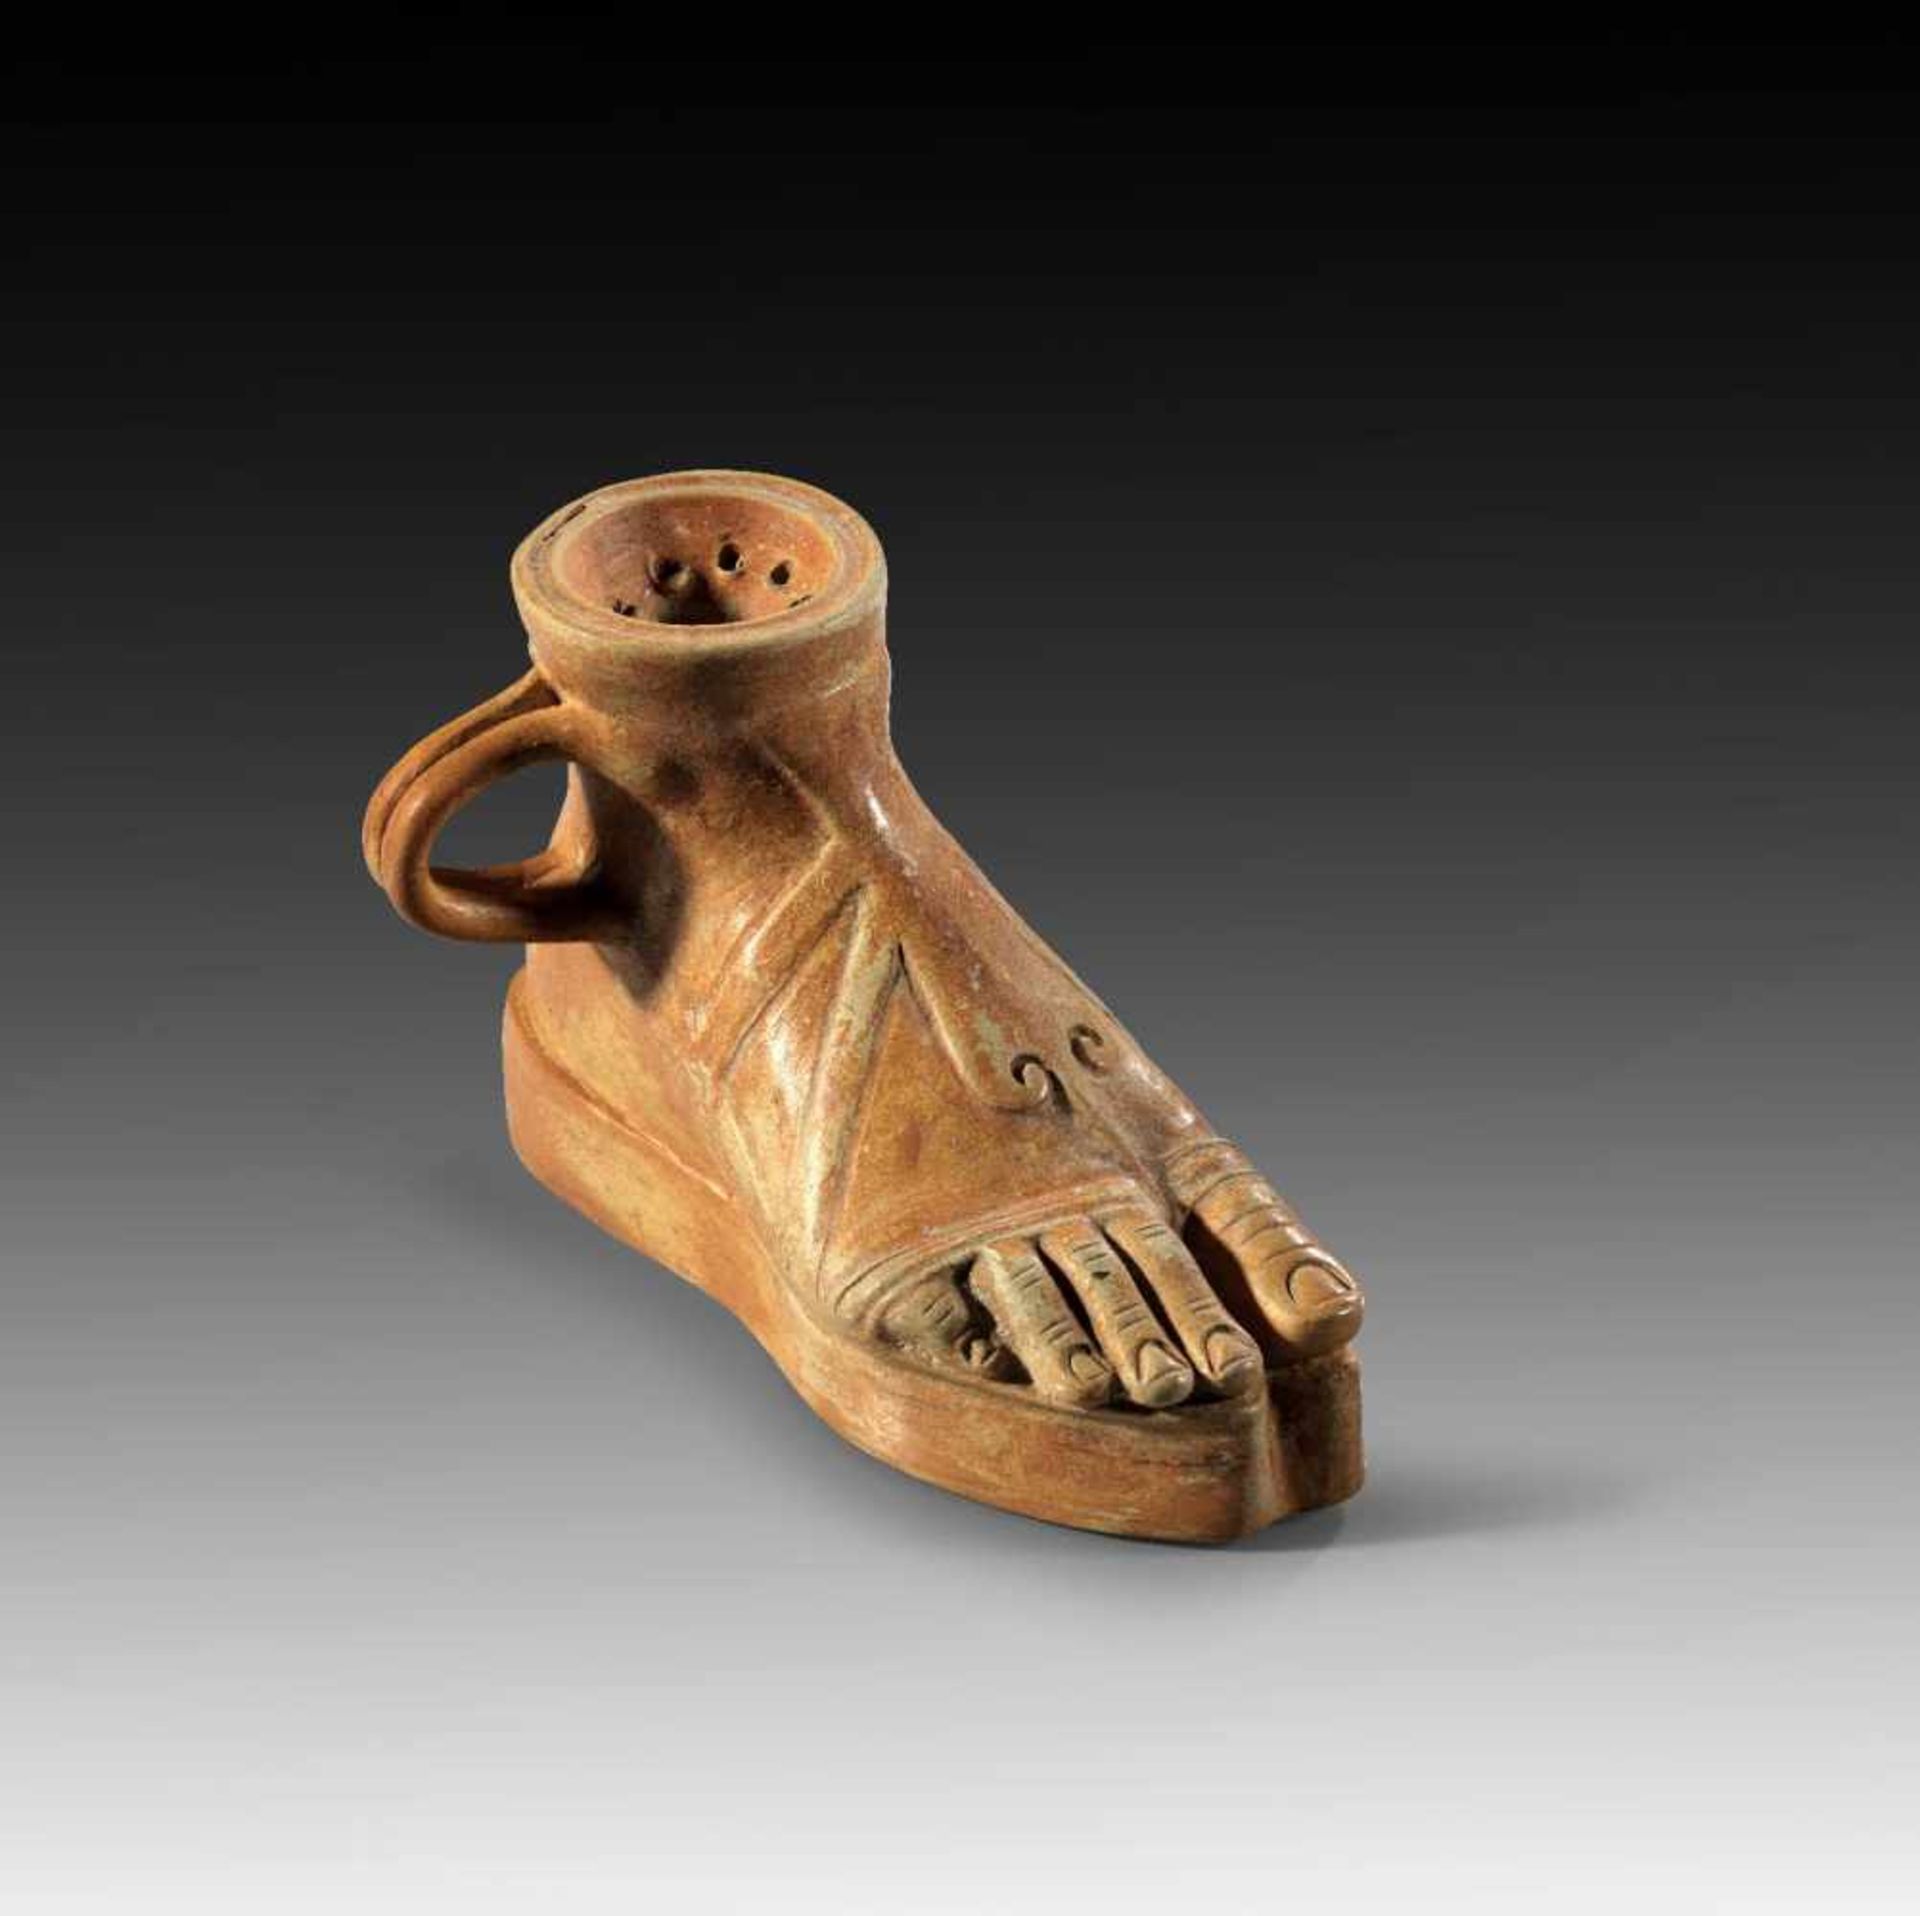 Griechischer Askos in Form eines Fußes mit Sandale. Magna Graecia, 4. - 3. Jh. v. Chr. H 8,4cm, L